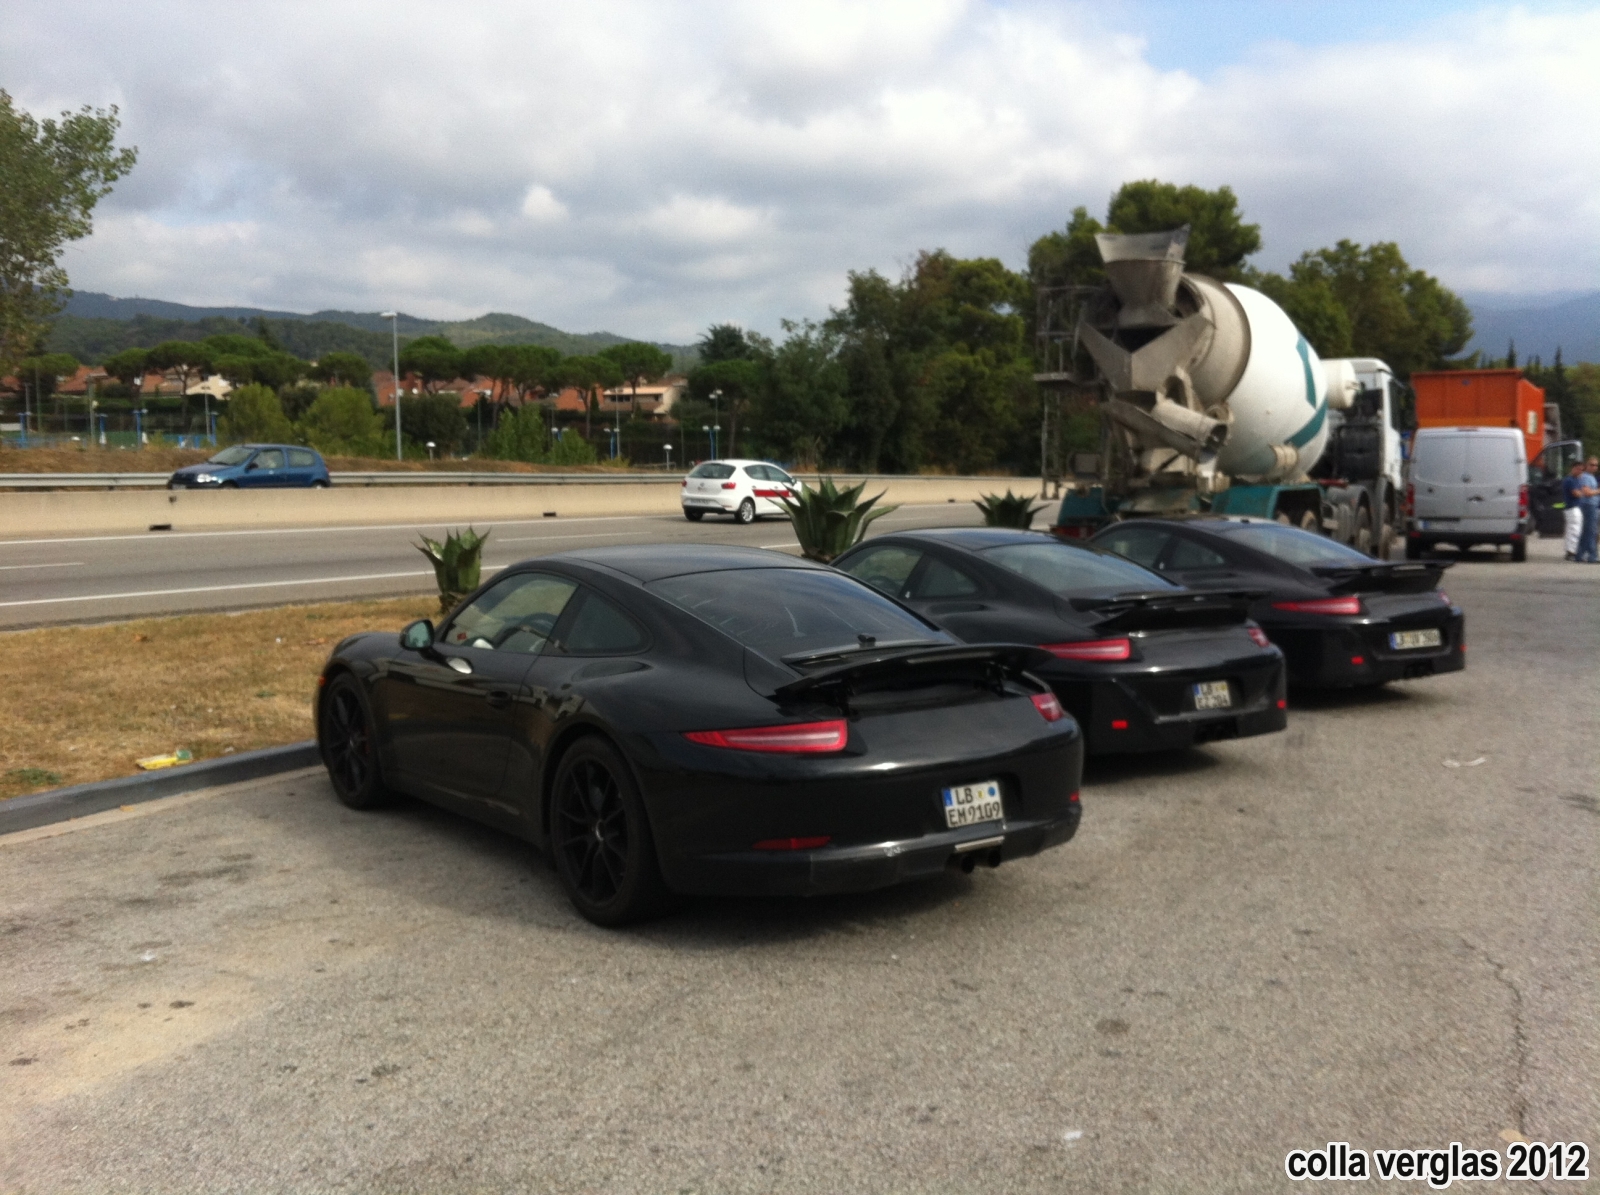 2013 Porsche 911 (991) GT3 Undisguised in Spain Photo 1